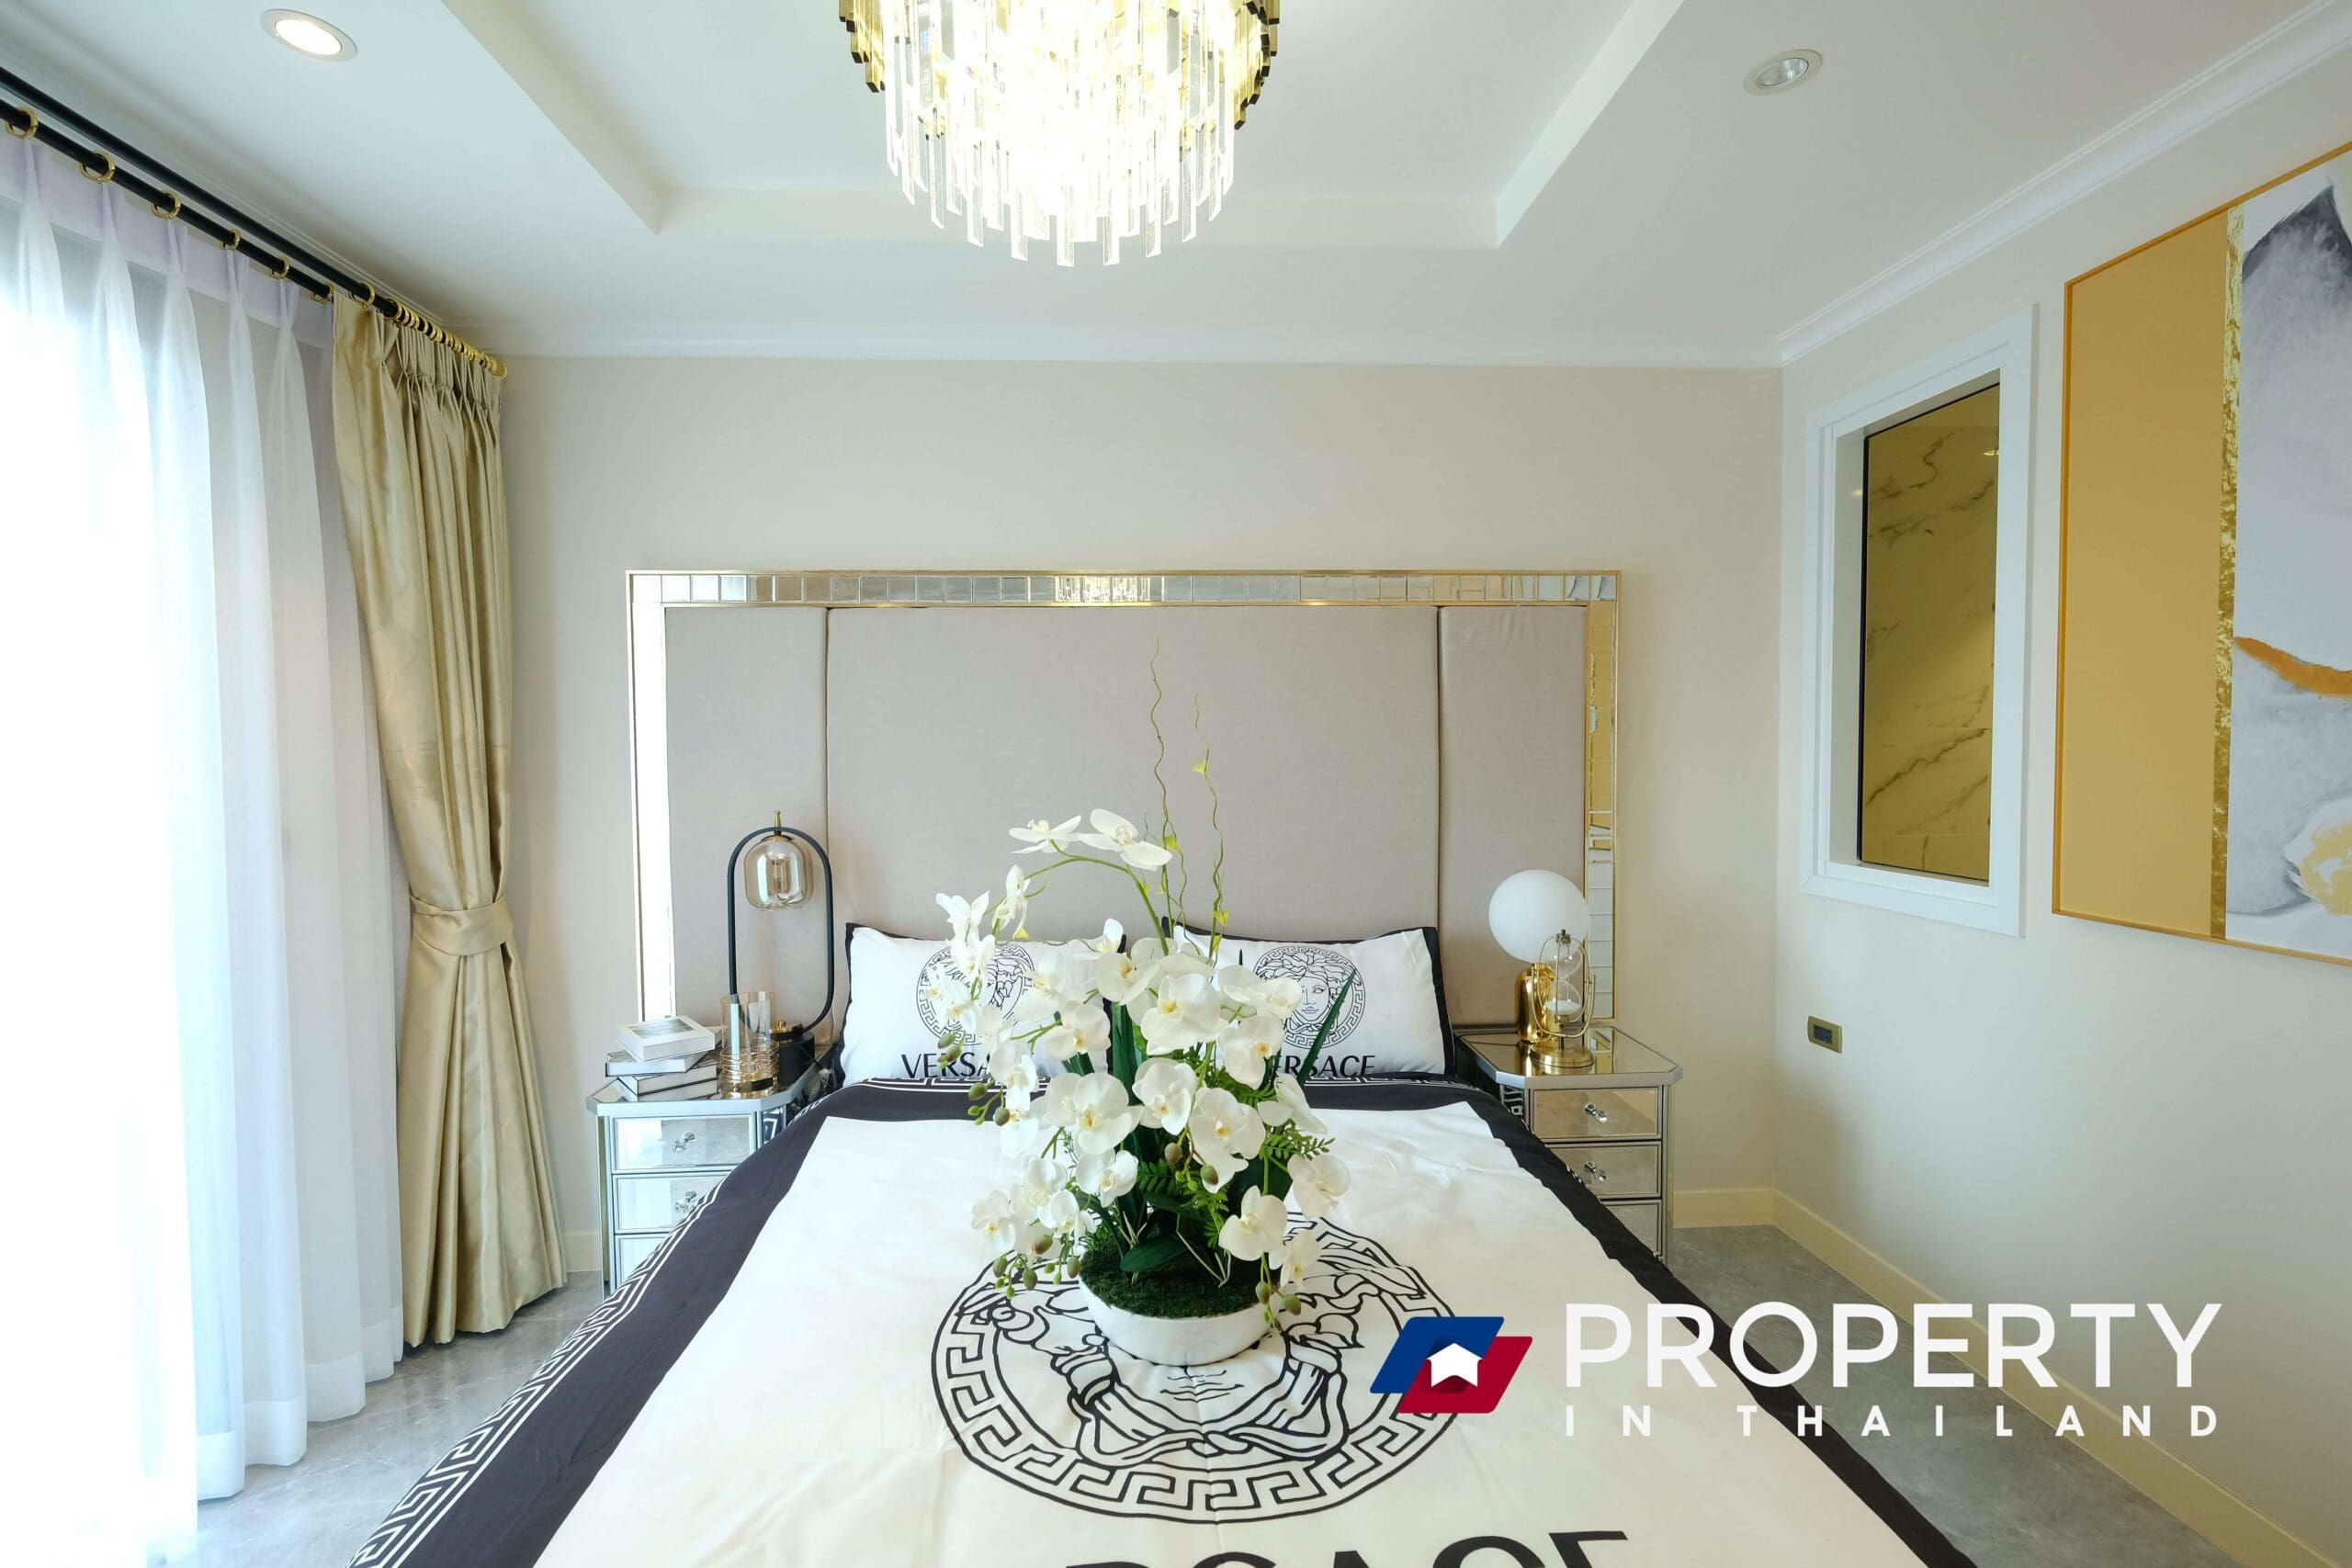 Property in Thailand (Bedroom)